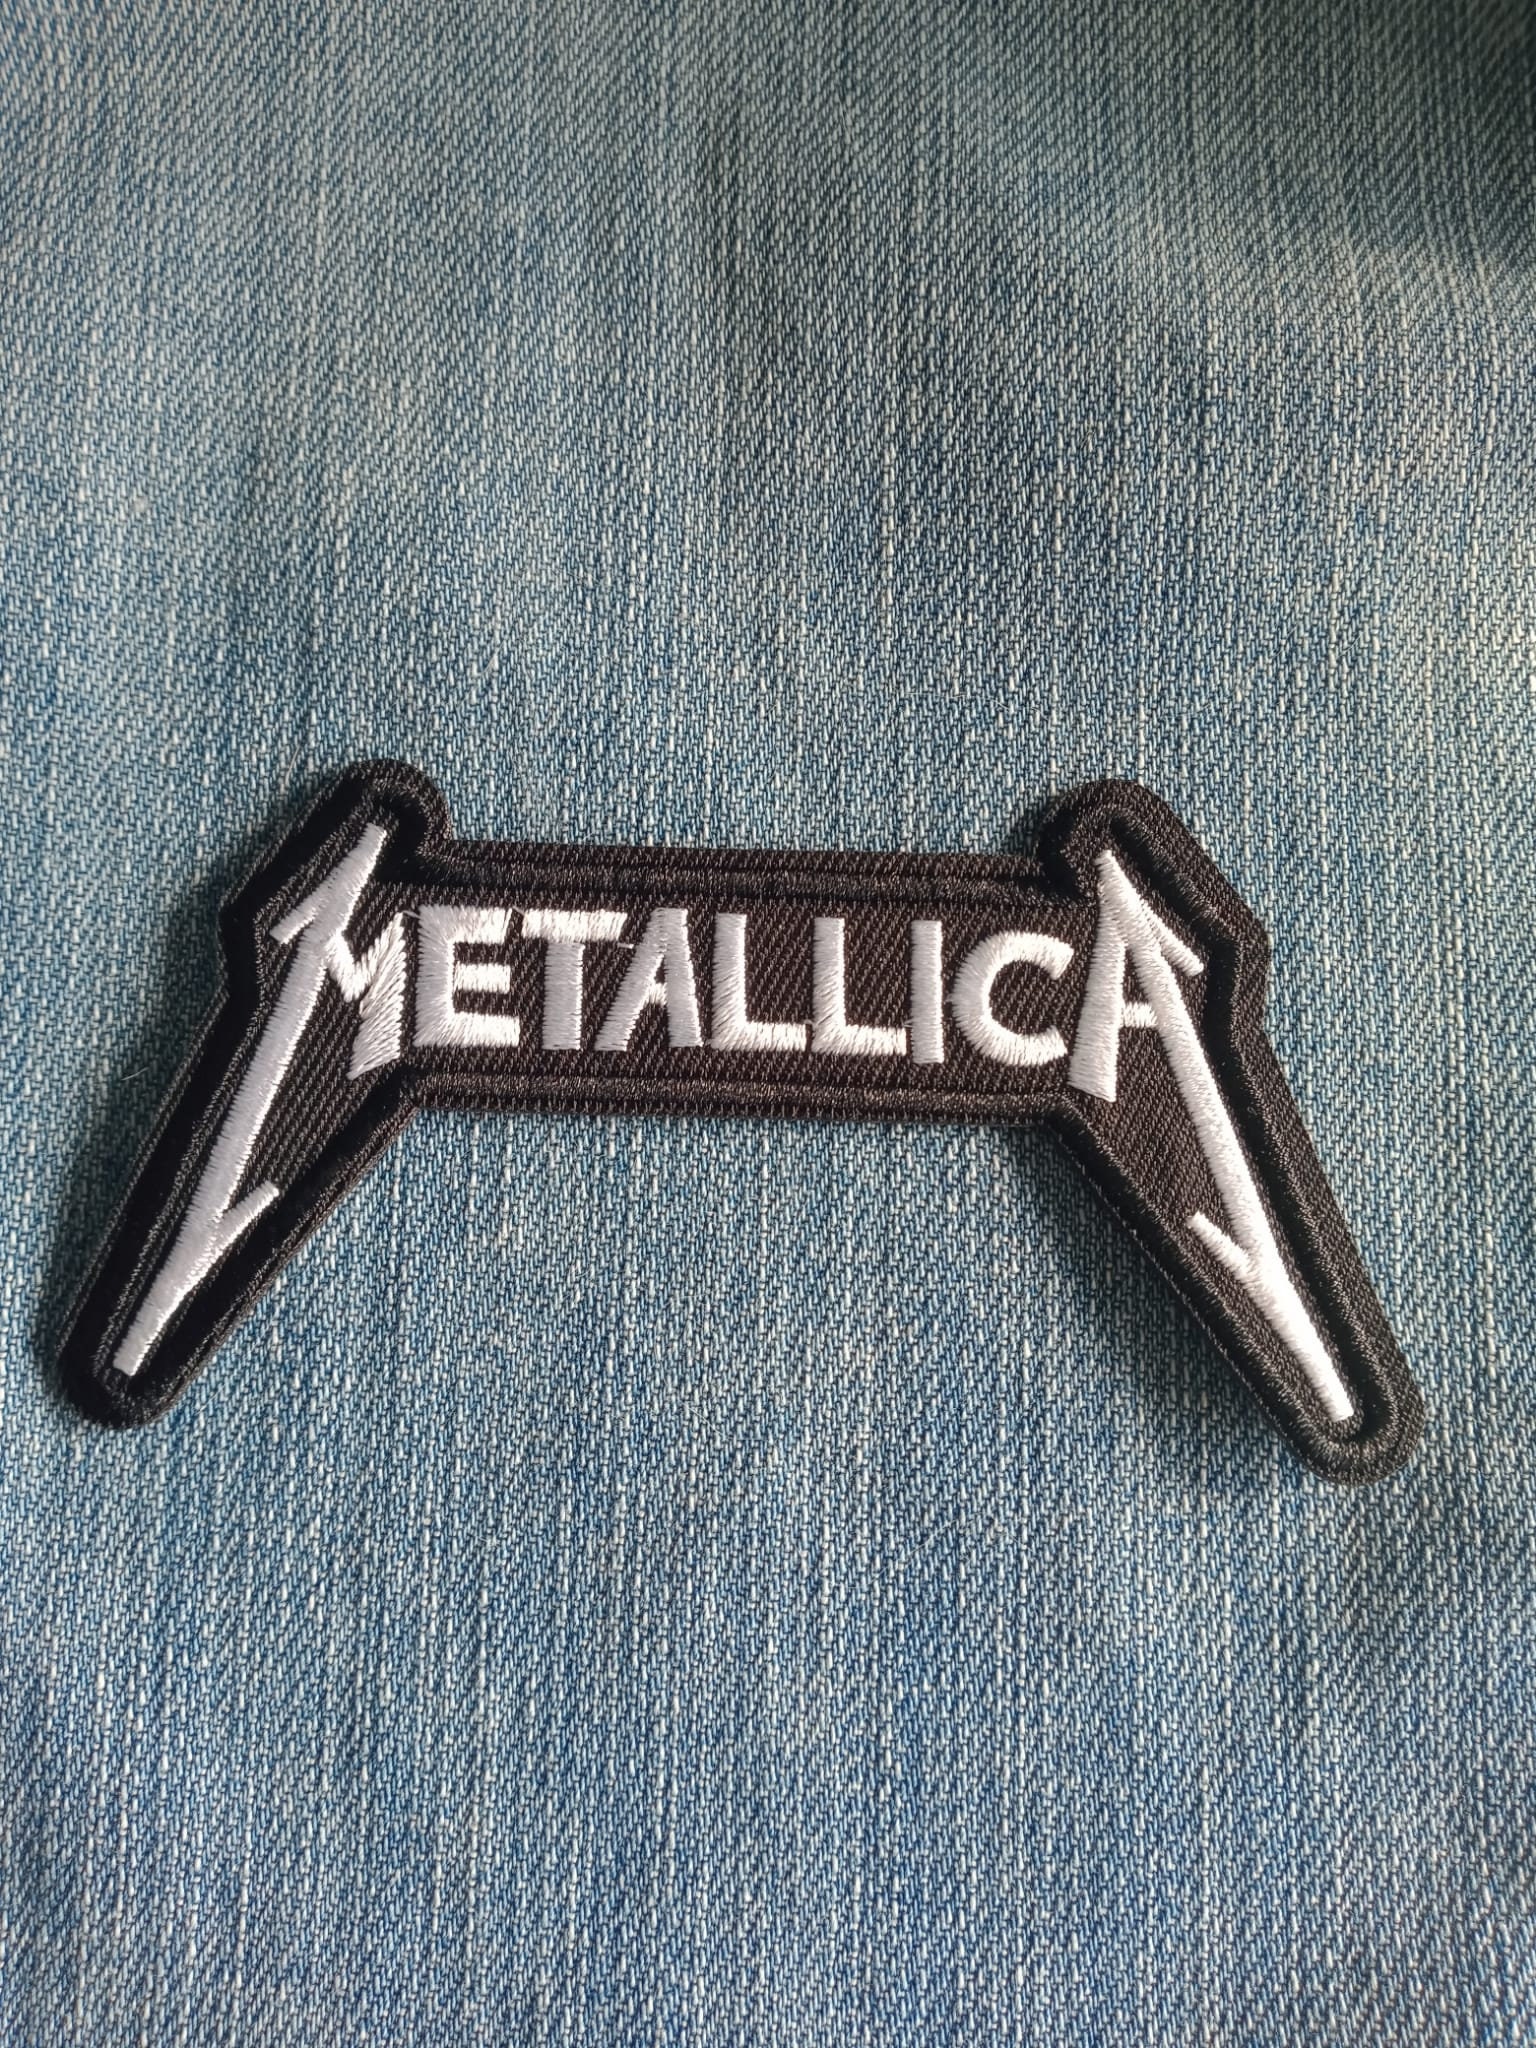 Metallica Wherever I May Roam LOGO Patch 12cm X 5cm 